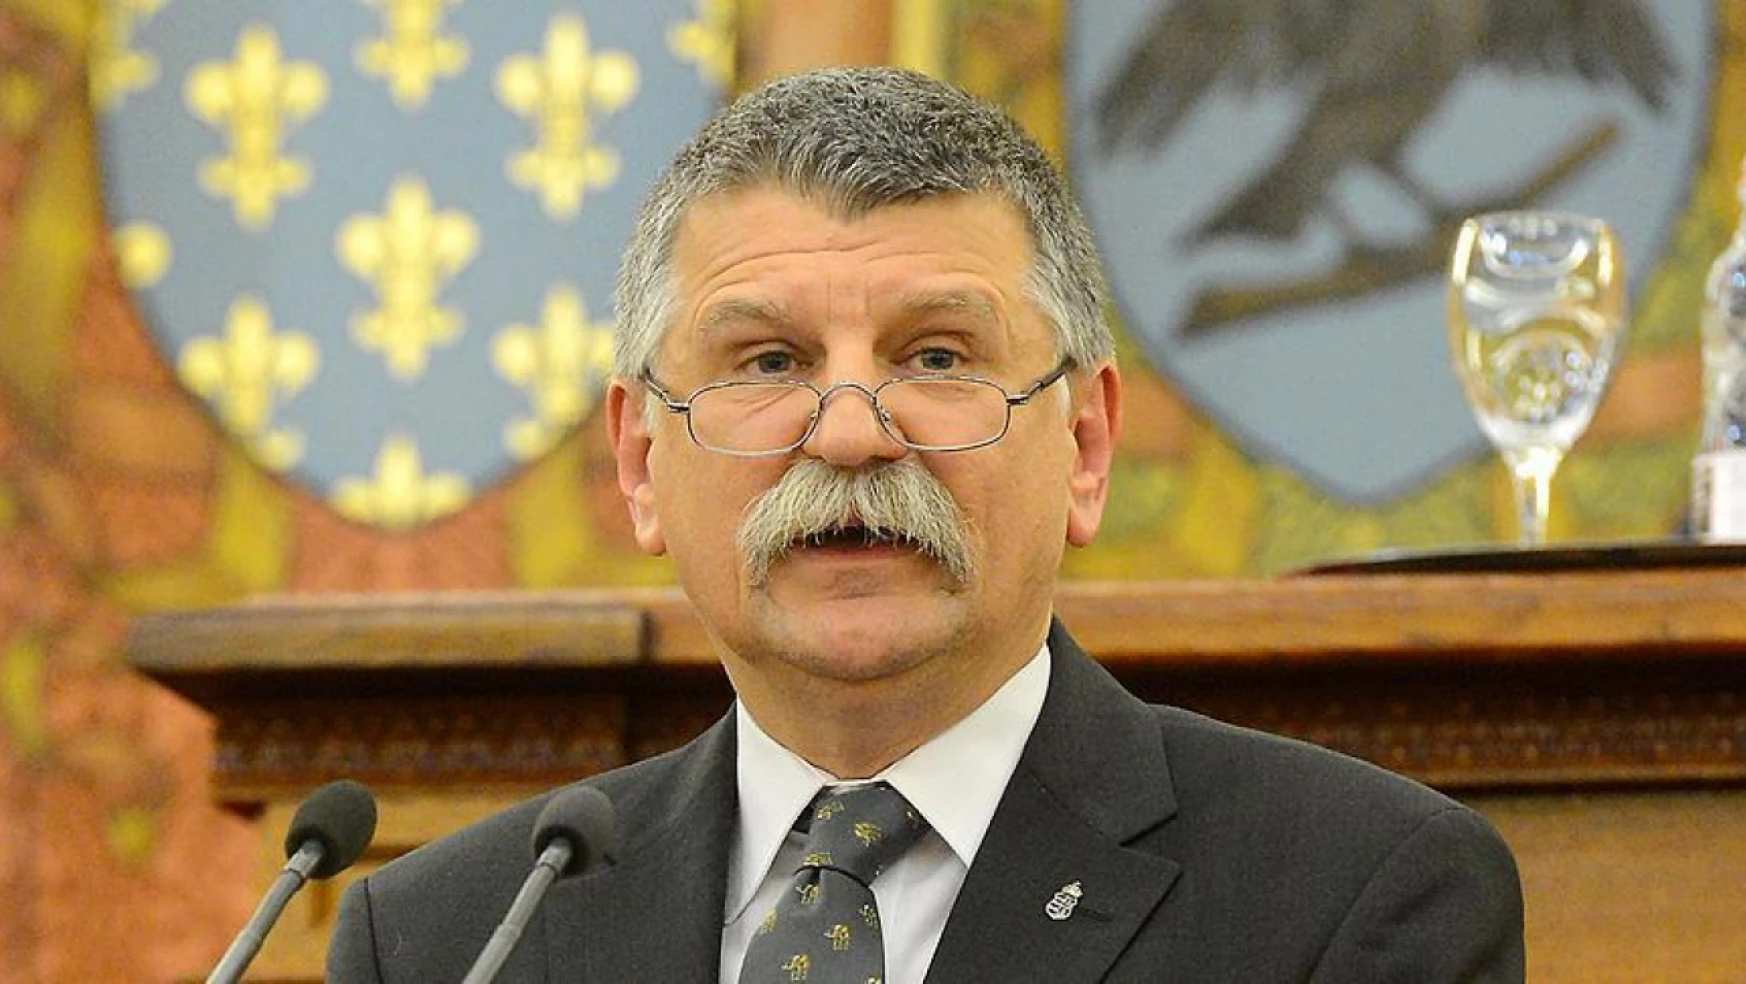 Macaristan Parlamentosu Başkanı Kover'den İsveç açıklaması: 'Aciliyet hissetmiyorum'